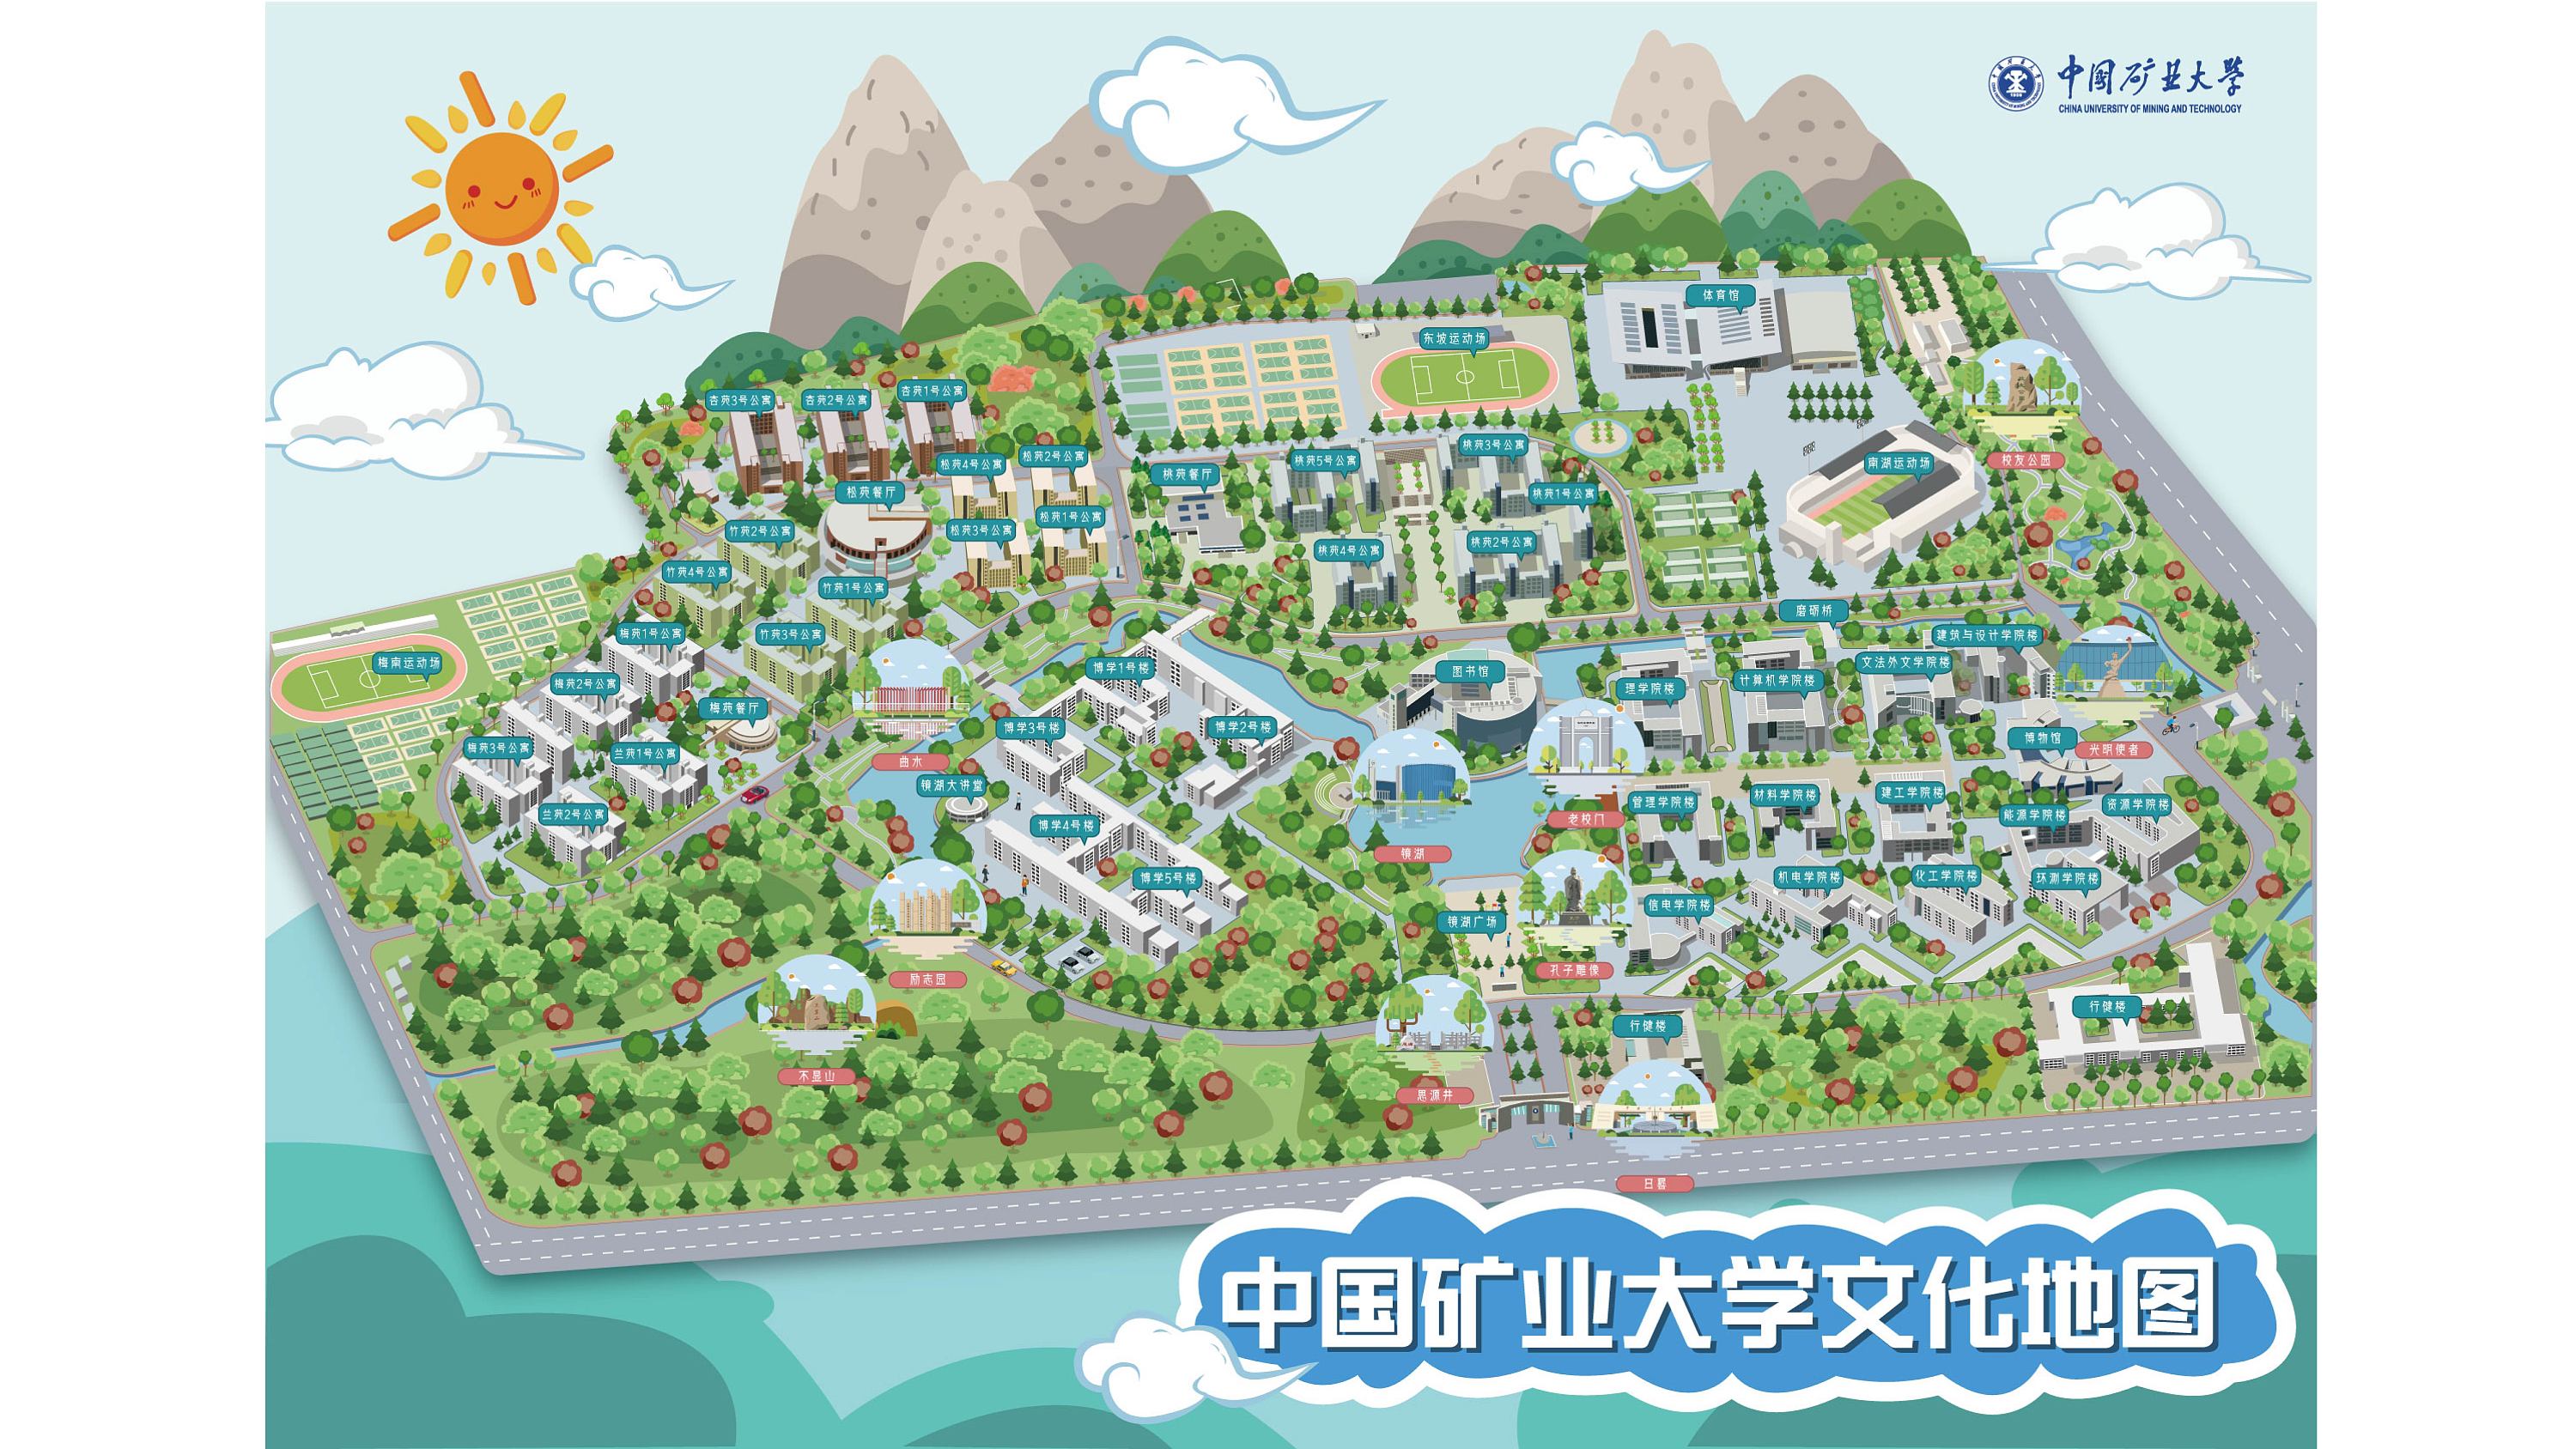 扁平建筑插画加中国矿业大学卡通地图图片